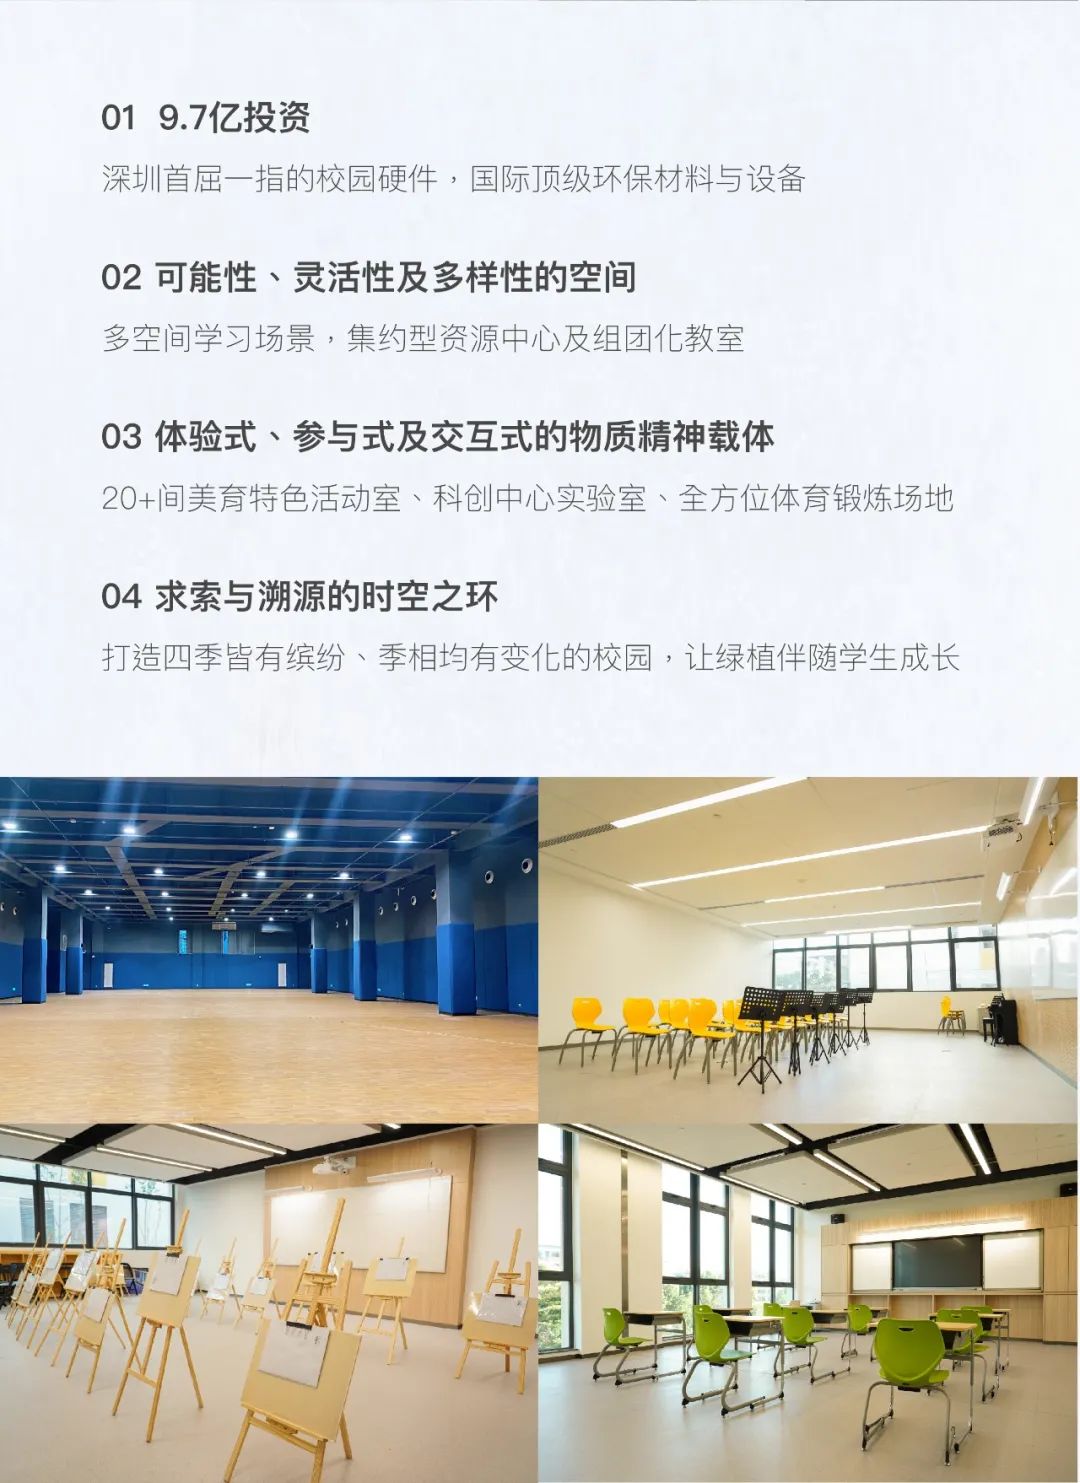 重点关注！深圳市华朗学校2021级高一新生自主招生公告